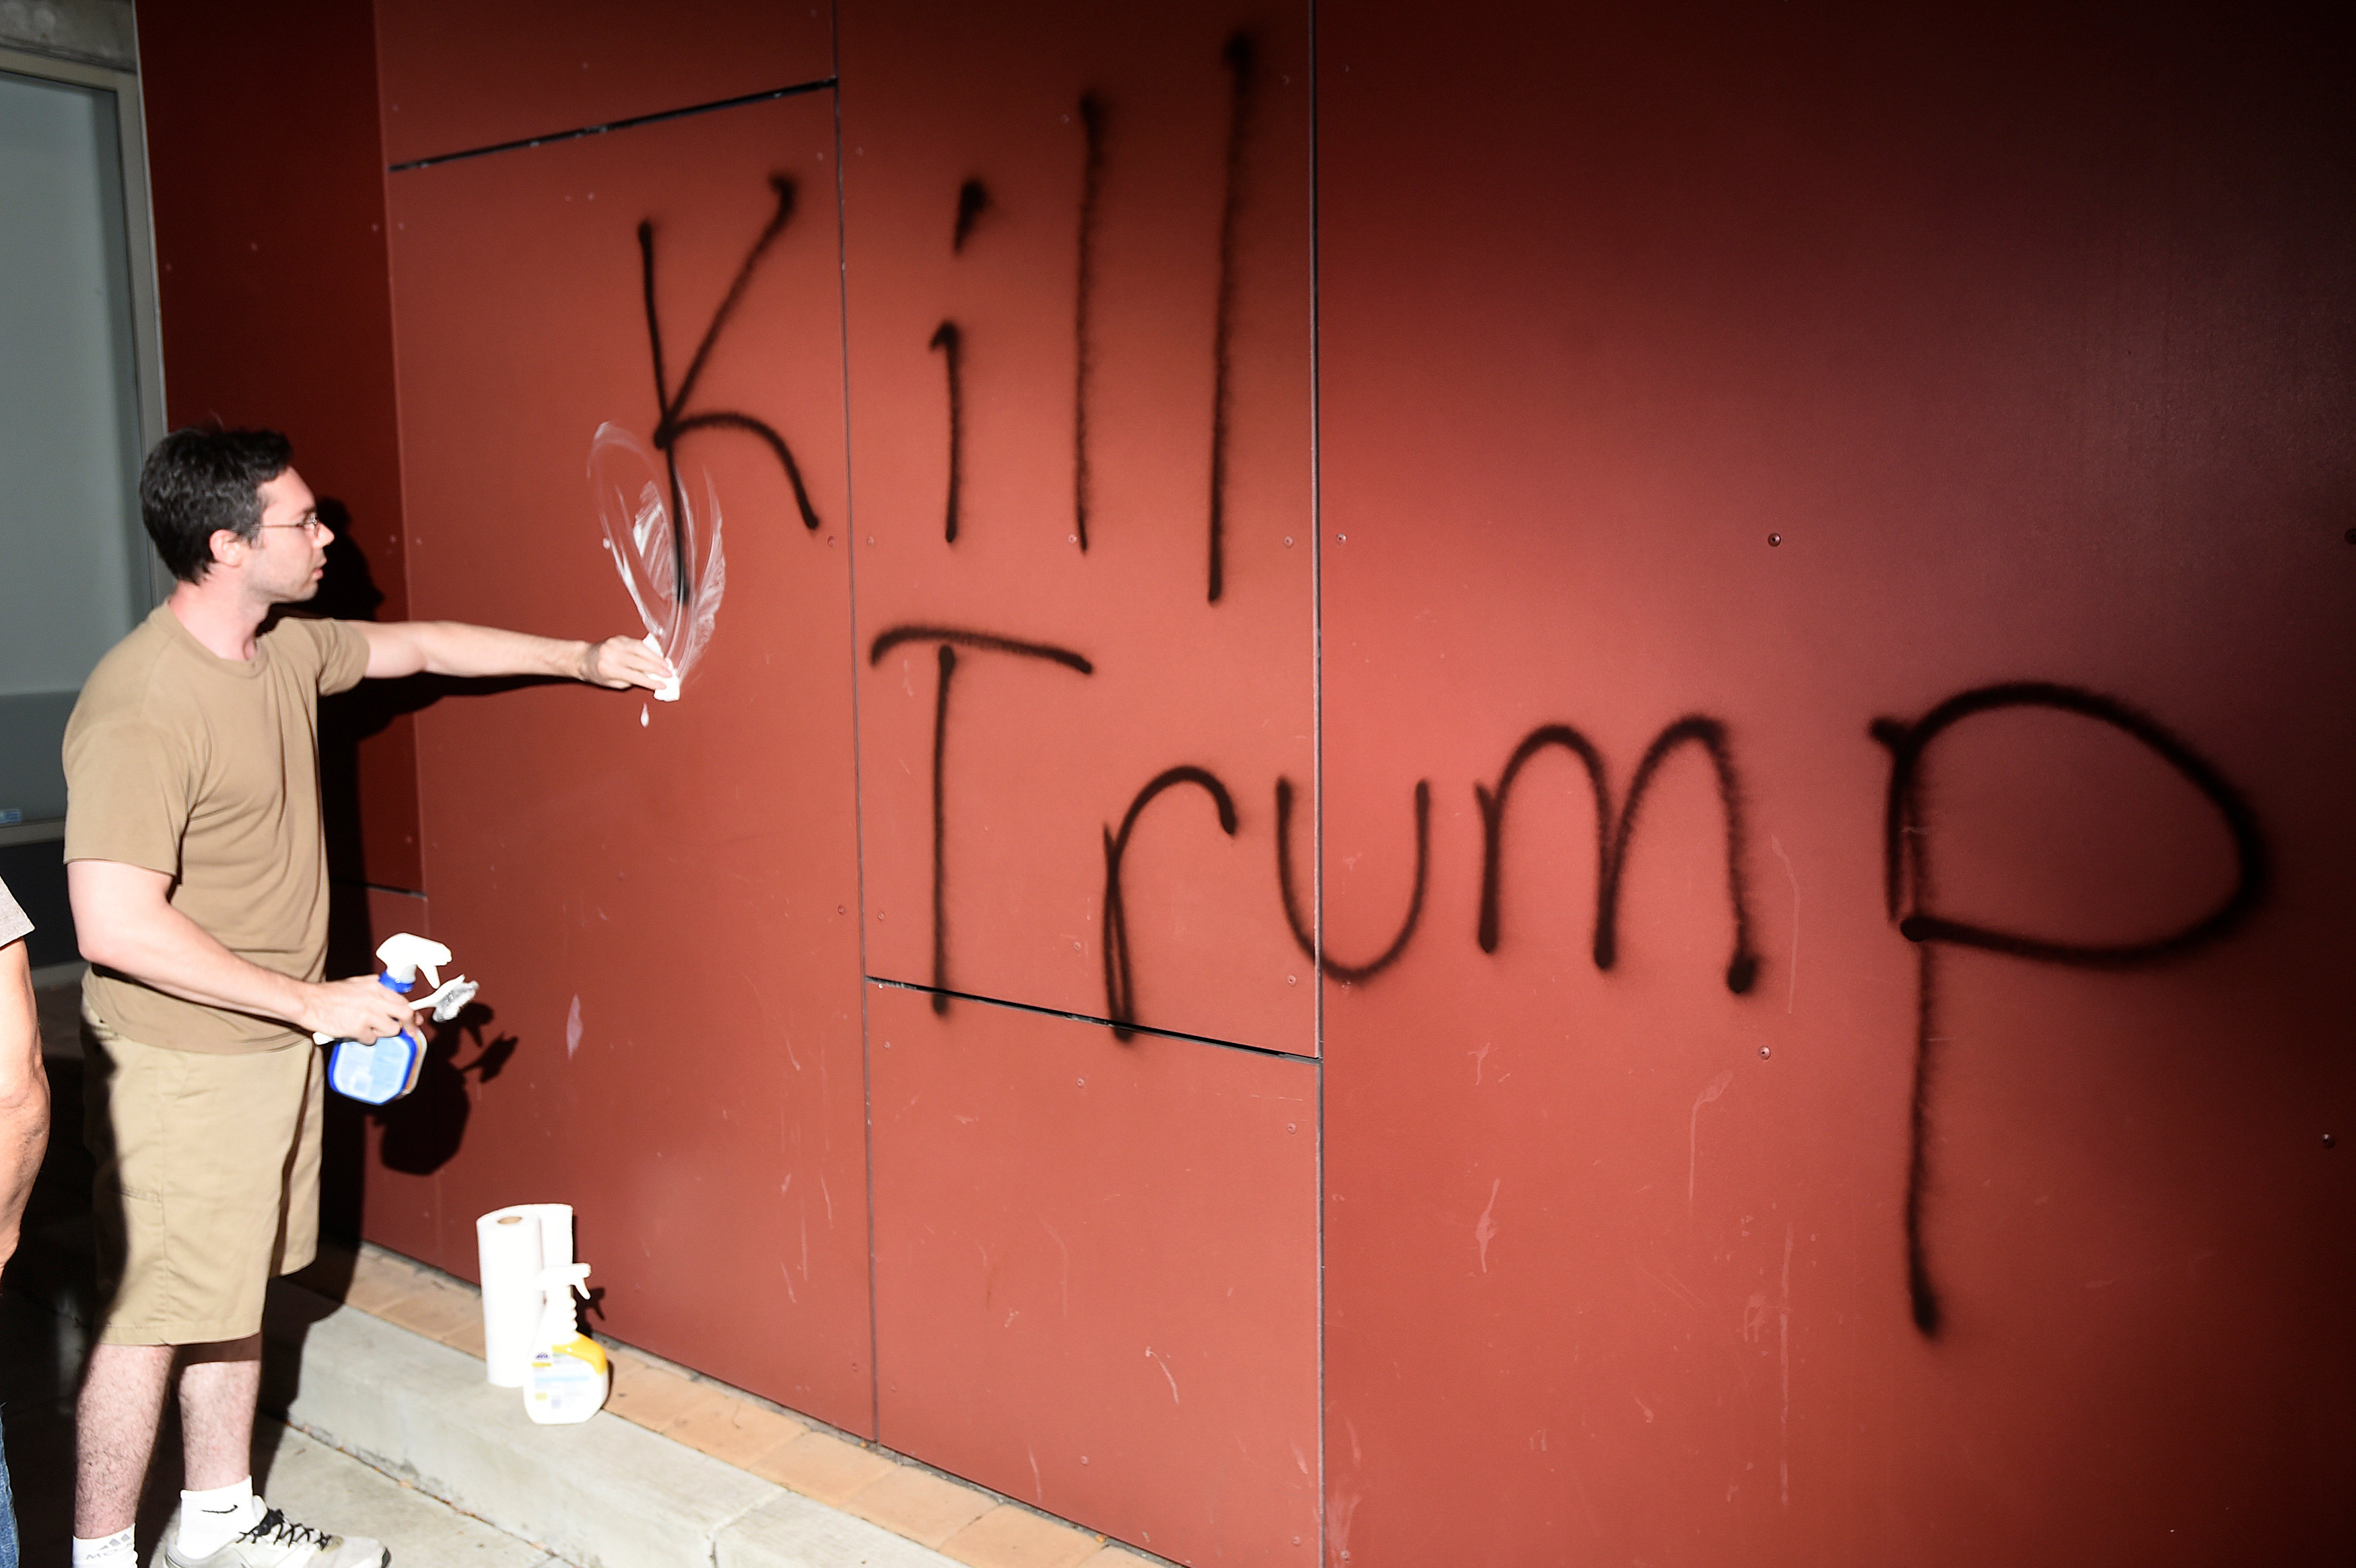 كتابات رافضة لترامب تقول "اقتلوا ترامب" 